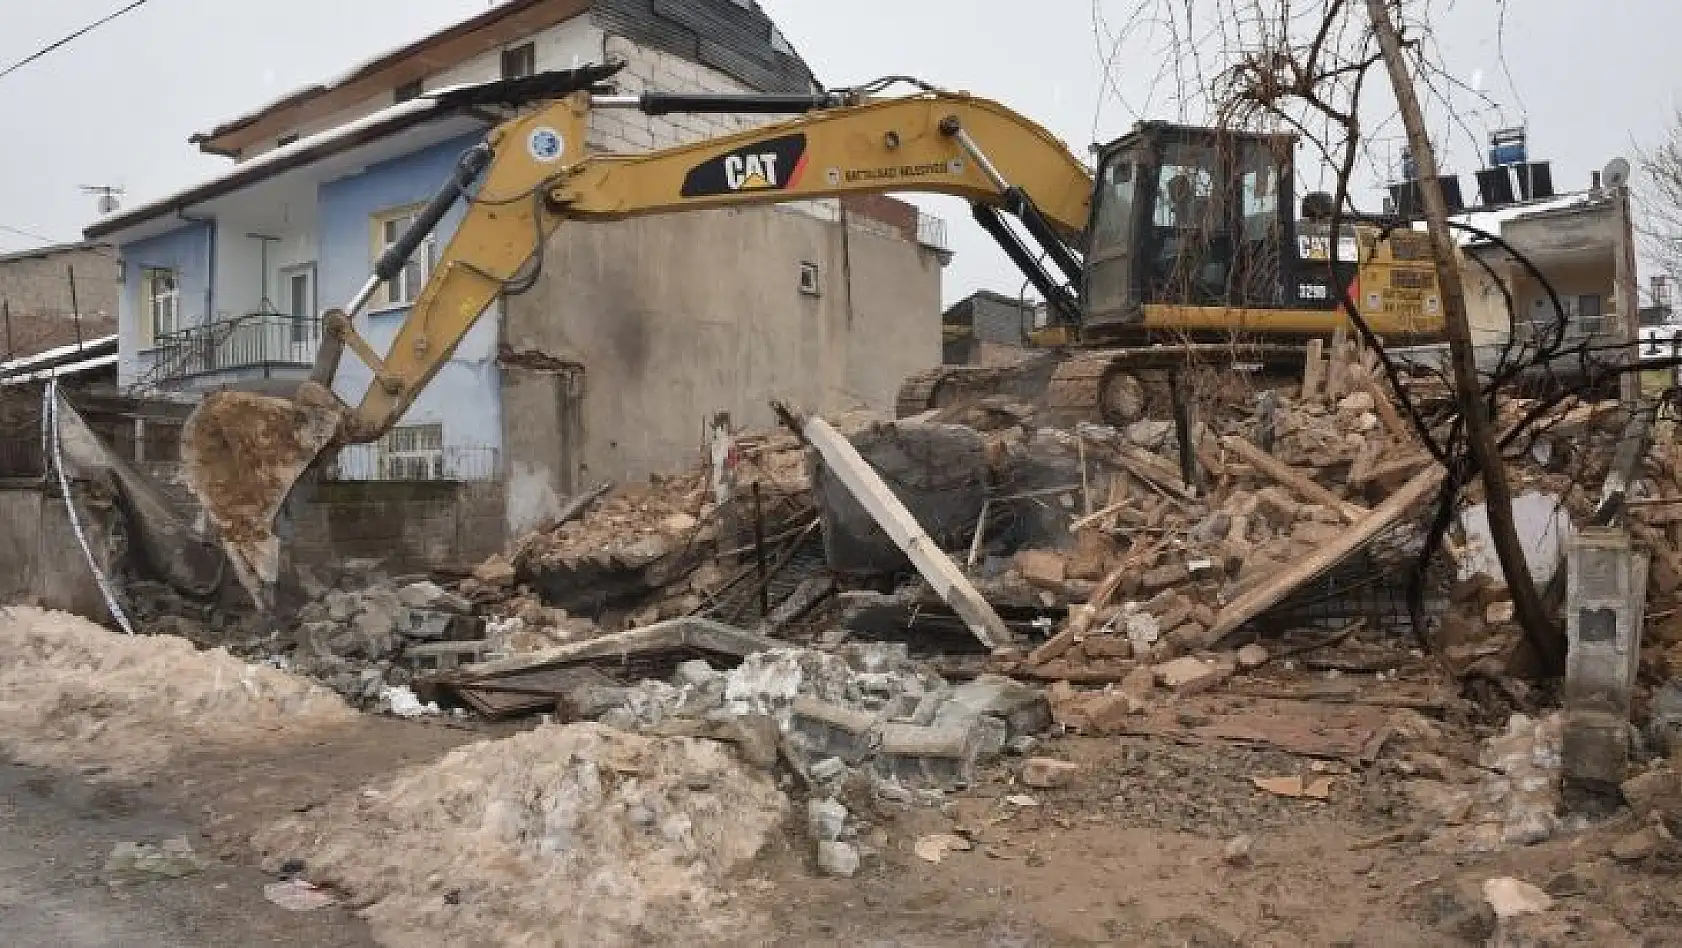 Riskli kerpiç ev Battalgazi Belediyesi ekipleri tarafından yıkıldı